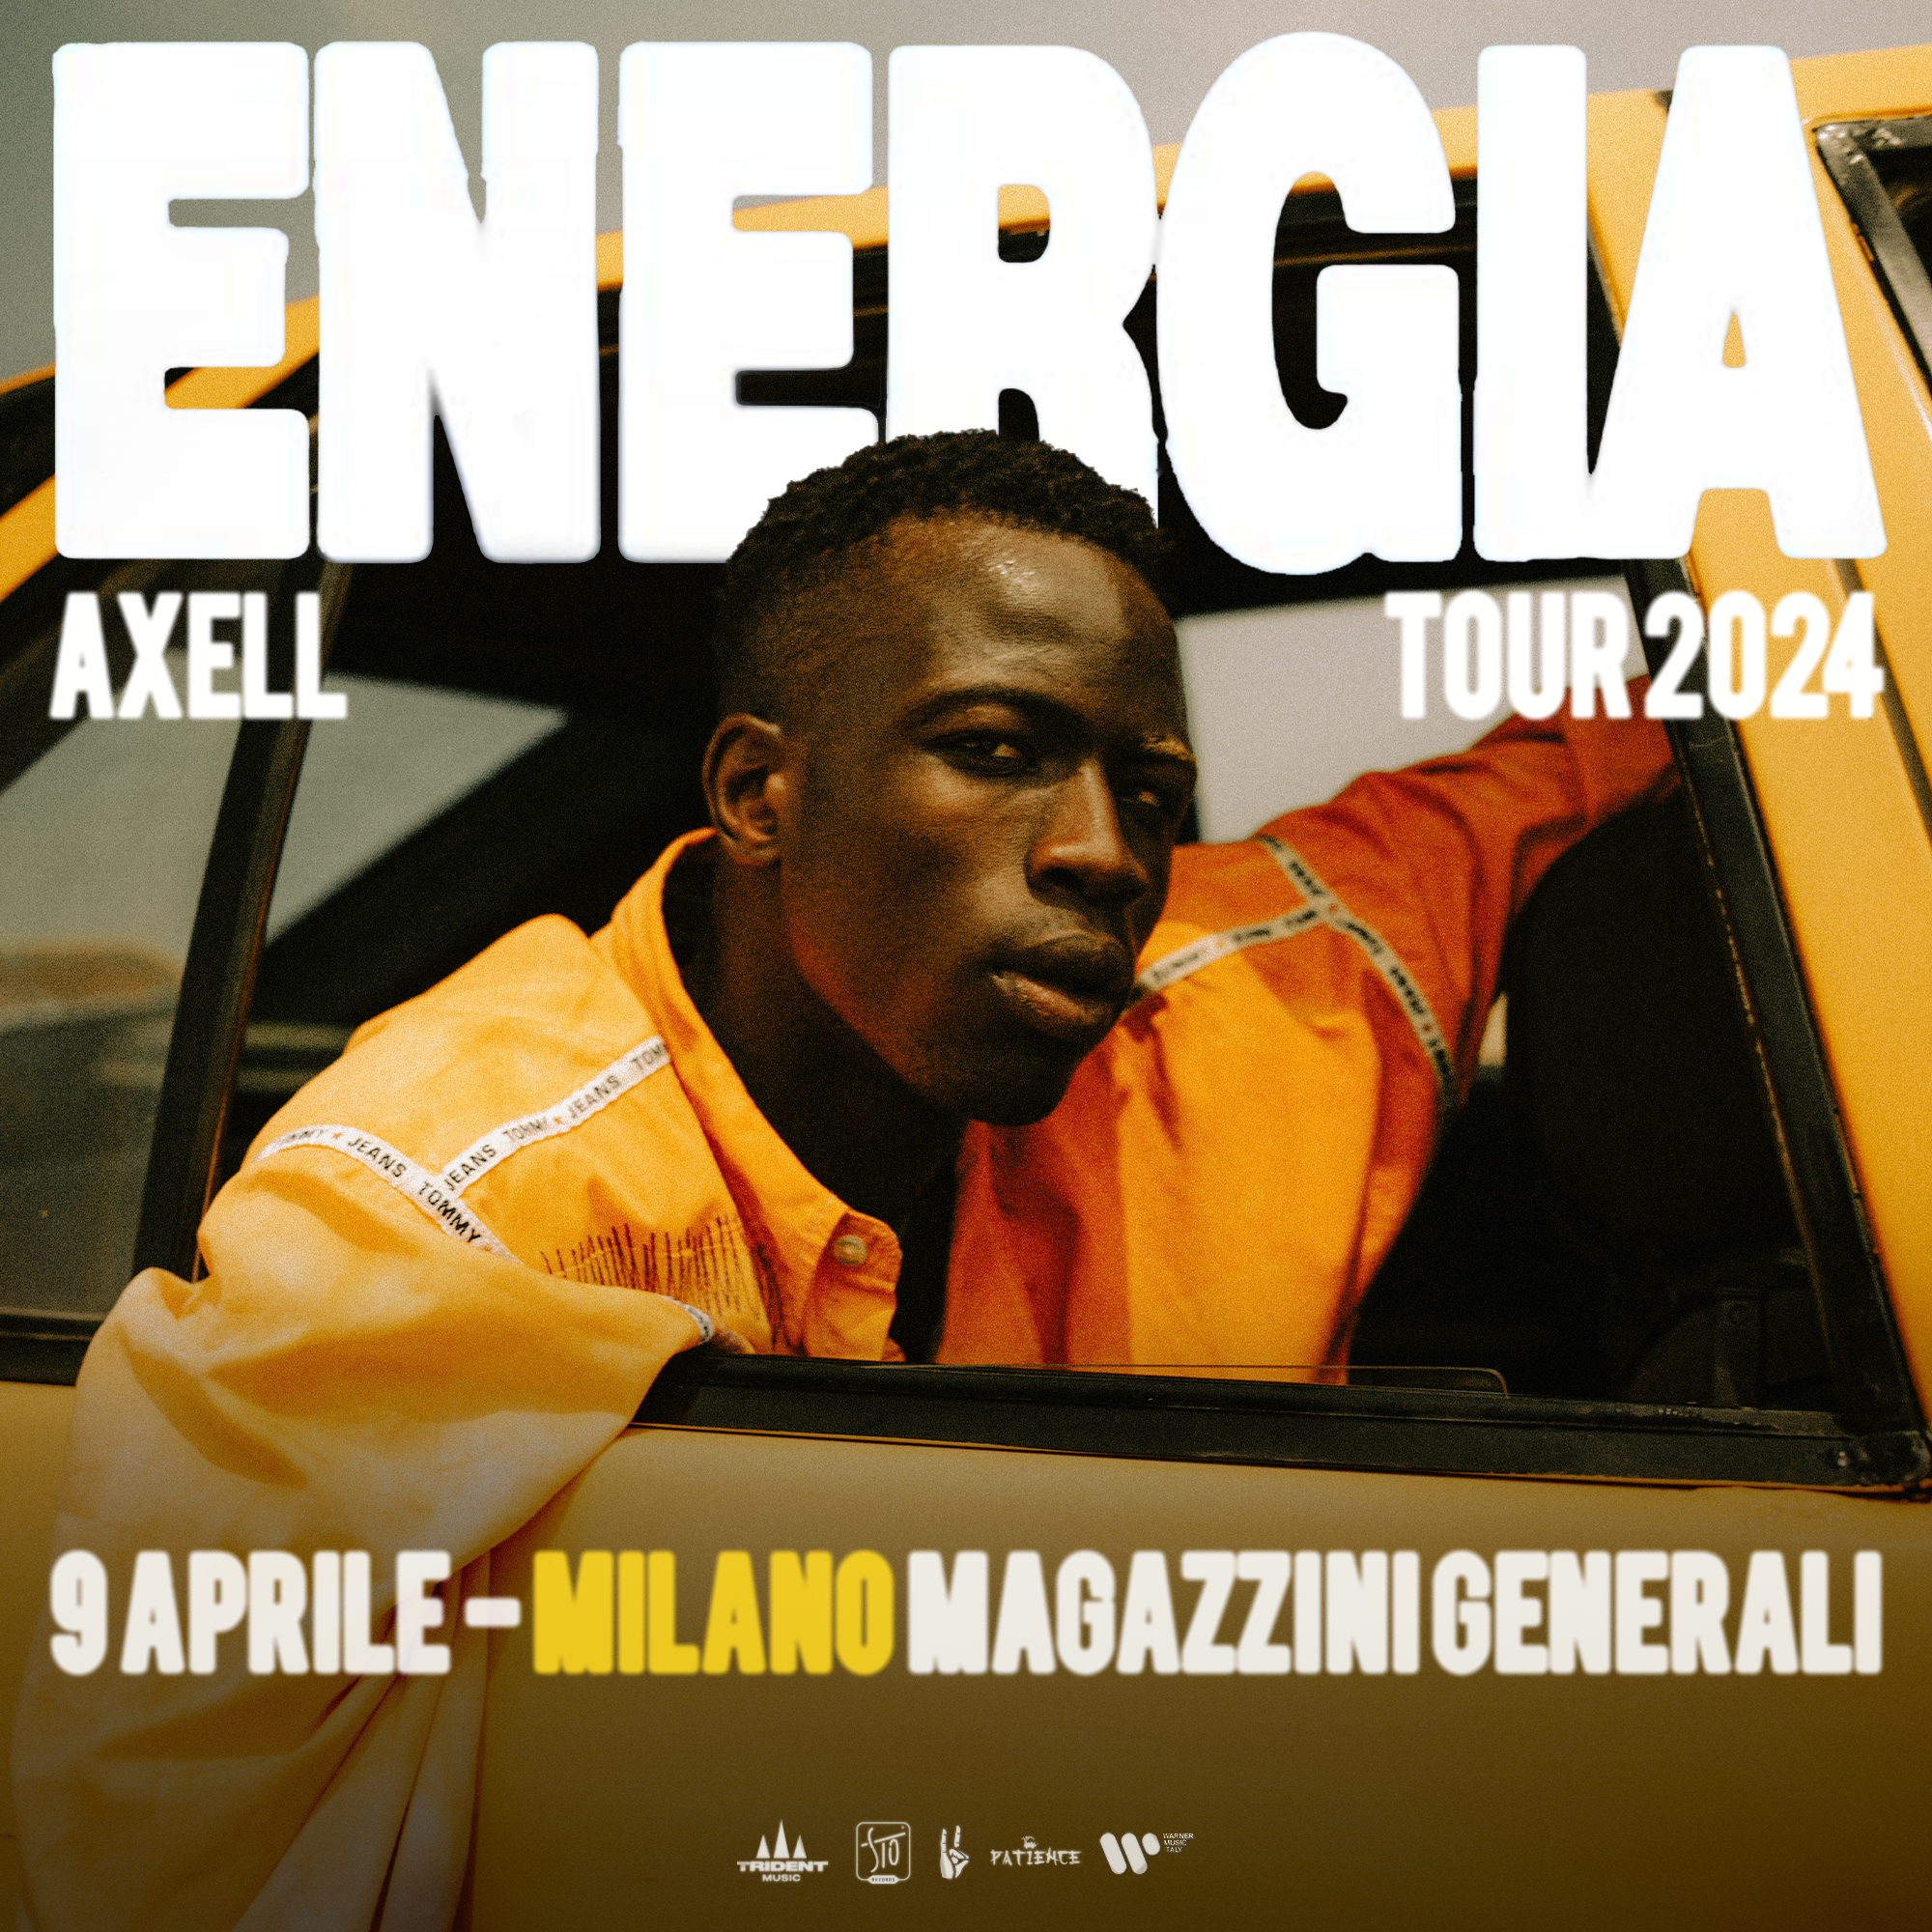 Il 09/04/2024 Axell arriva ai Magazzini Generali di Milano con il suo "Energia Tour", per una serata da non perdere